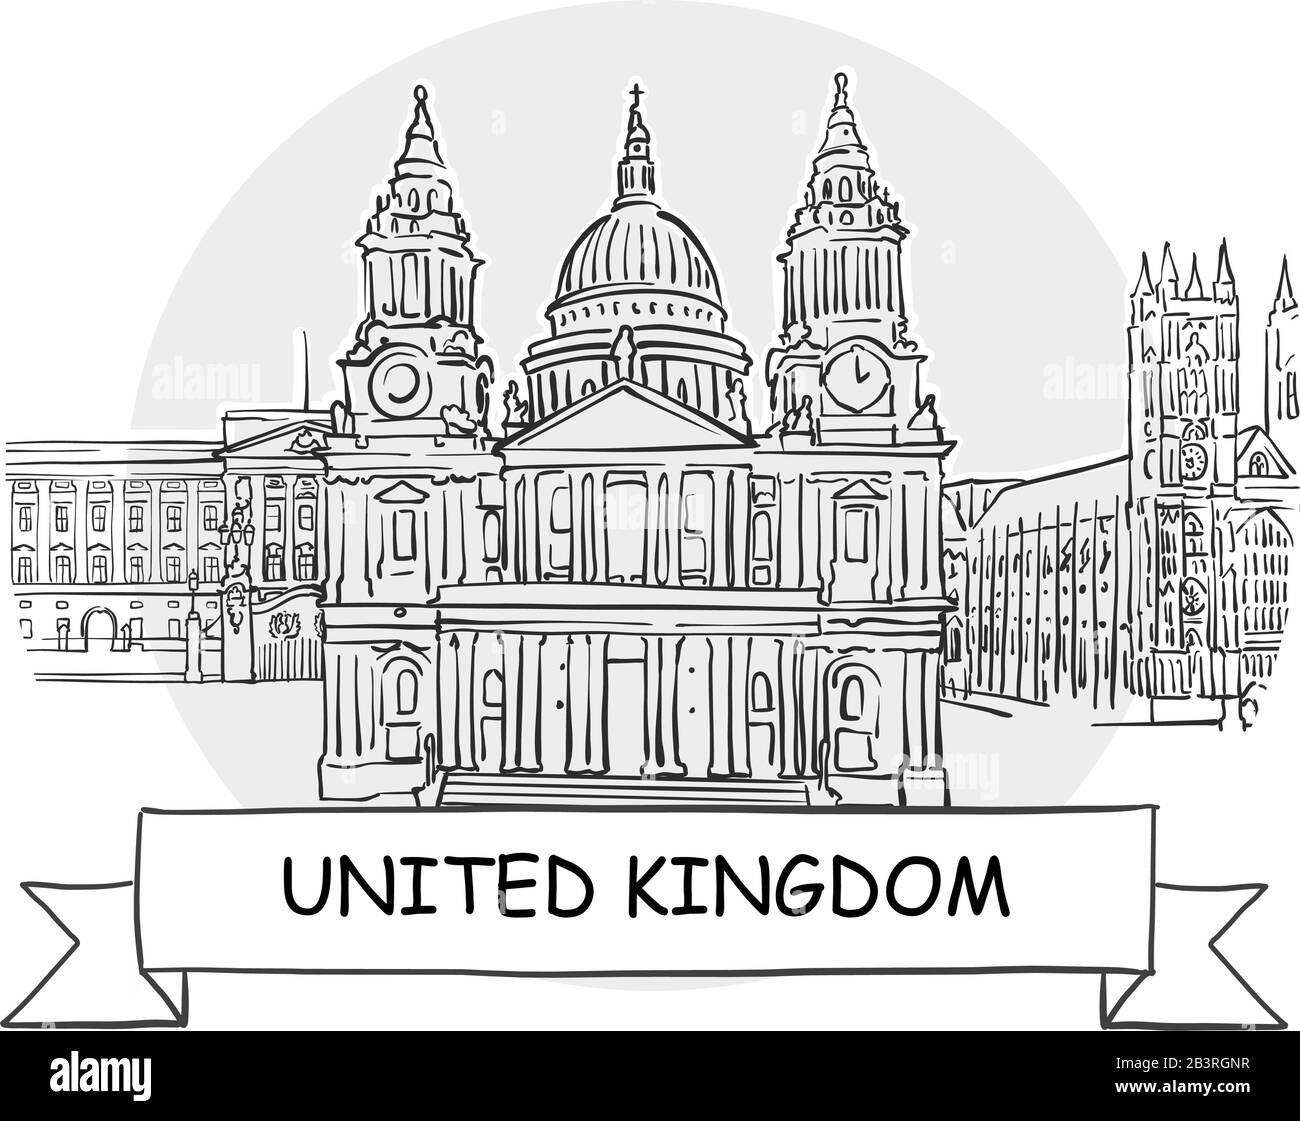 Regno Unito Segno Vettore Urbano Disegnato A Mano. Illustrazione Della Linea Nera Con Barra Multifunzione E Titolo. Illustrazione Vettoriale